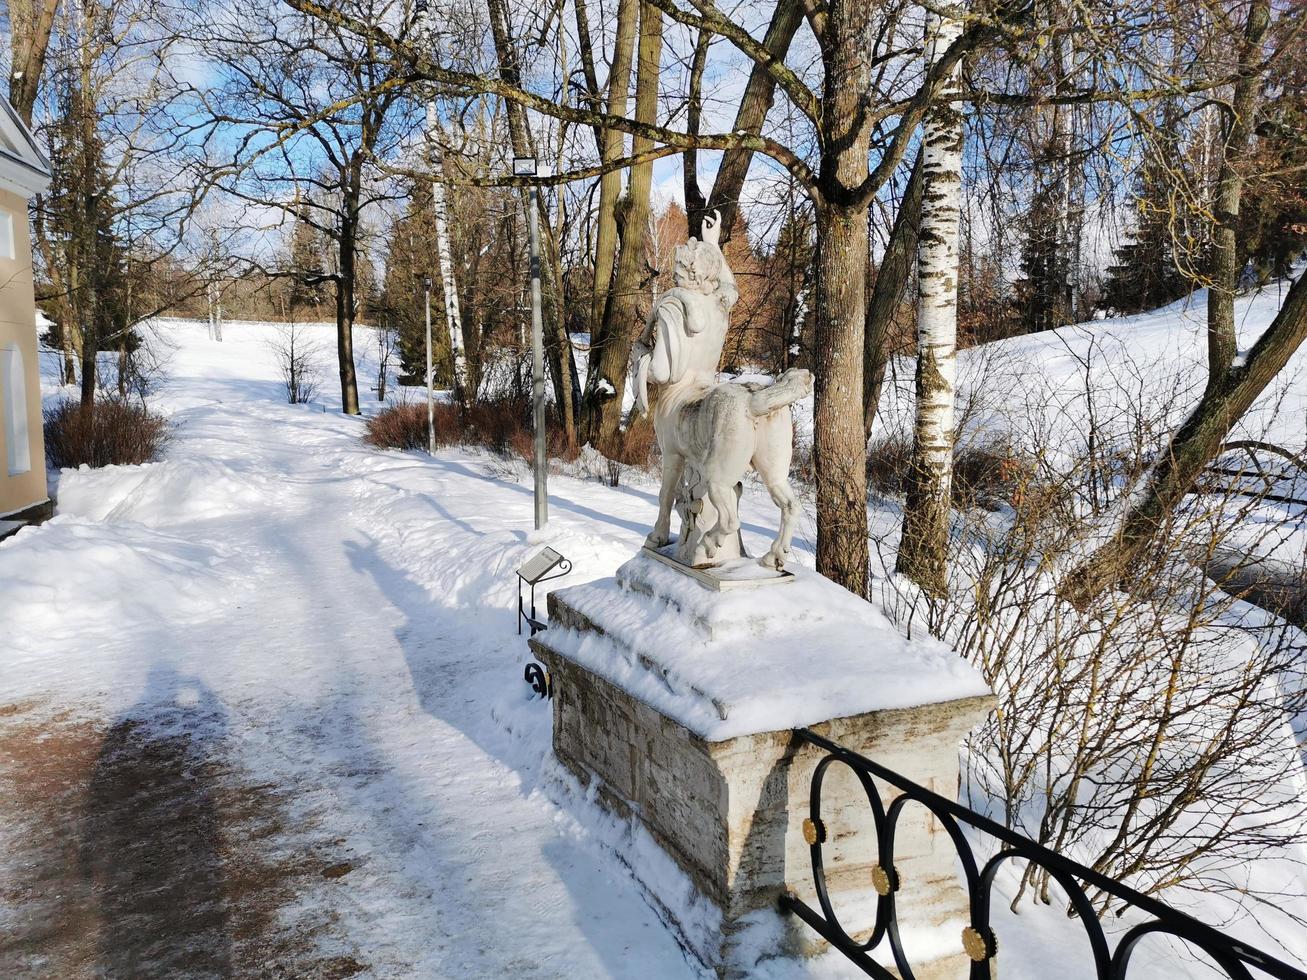 winter in pavlovsky park witte sneeuw en koude bomen foto